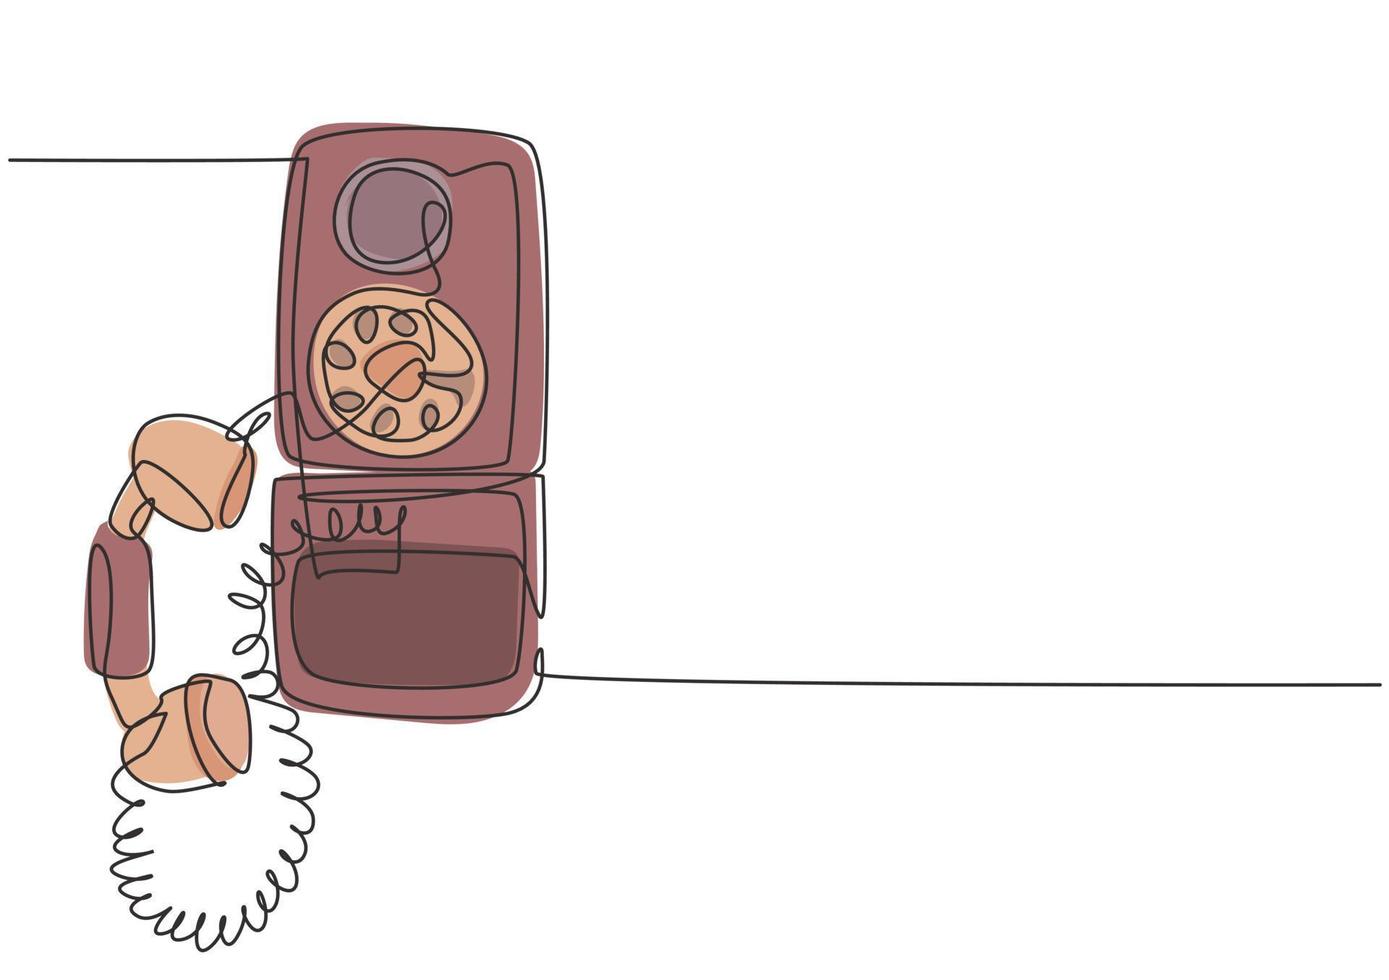 um desenho de linha contínuo de um telefone de parede analógico antigo para se comunicar. ilustração em vetor design gráfico de desenho de linha única retro clássico conceito de dispositivo de telecomunicação